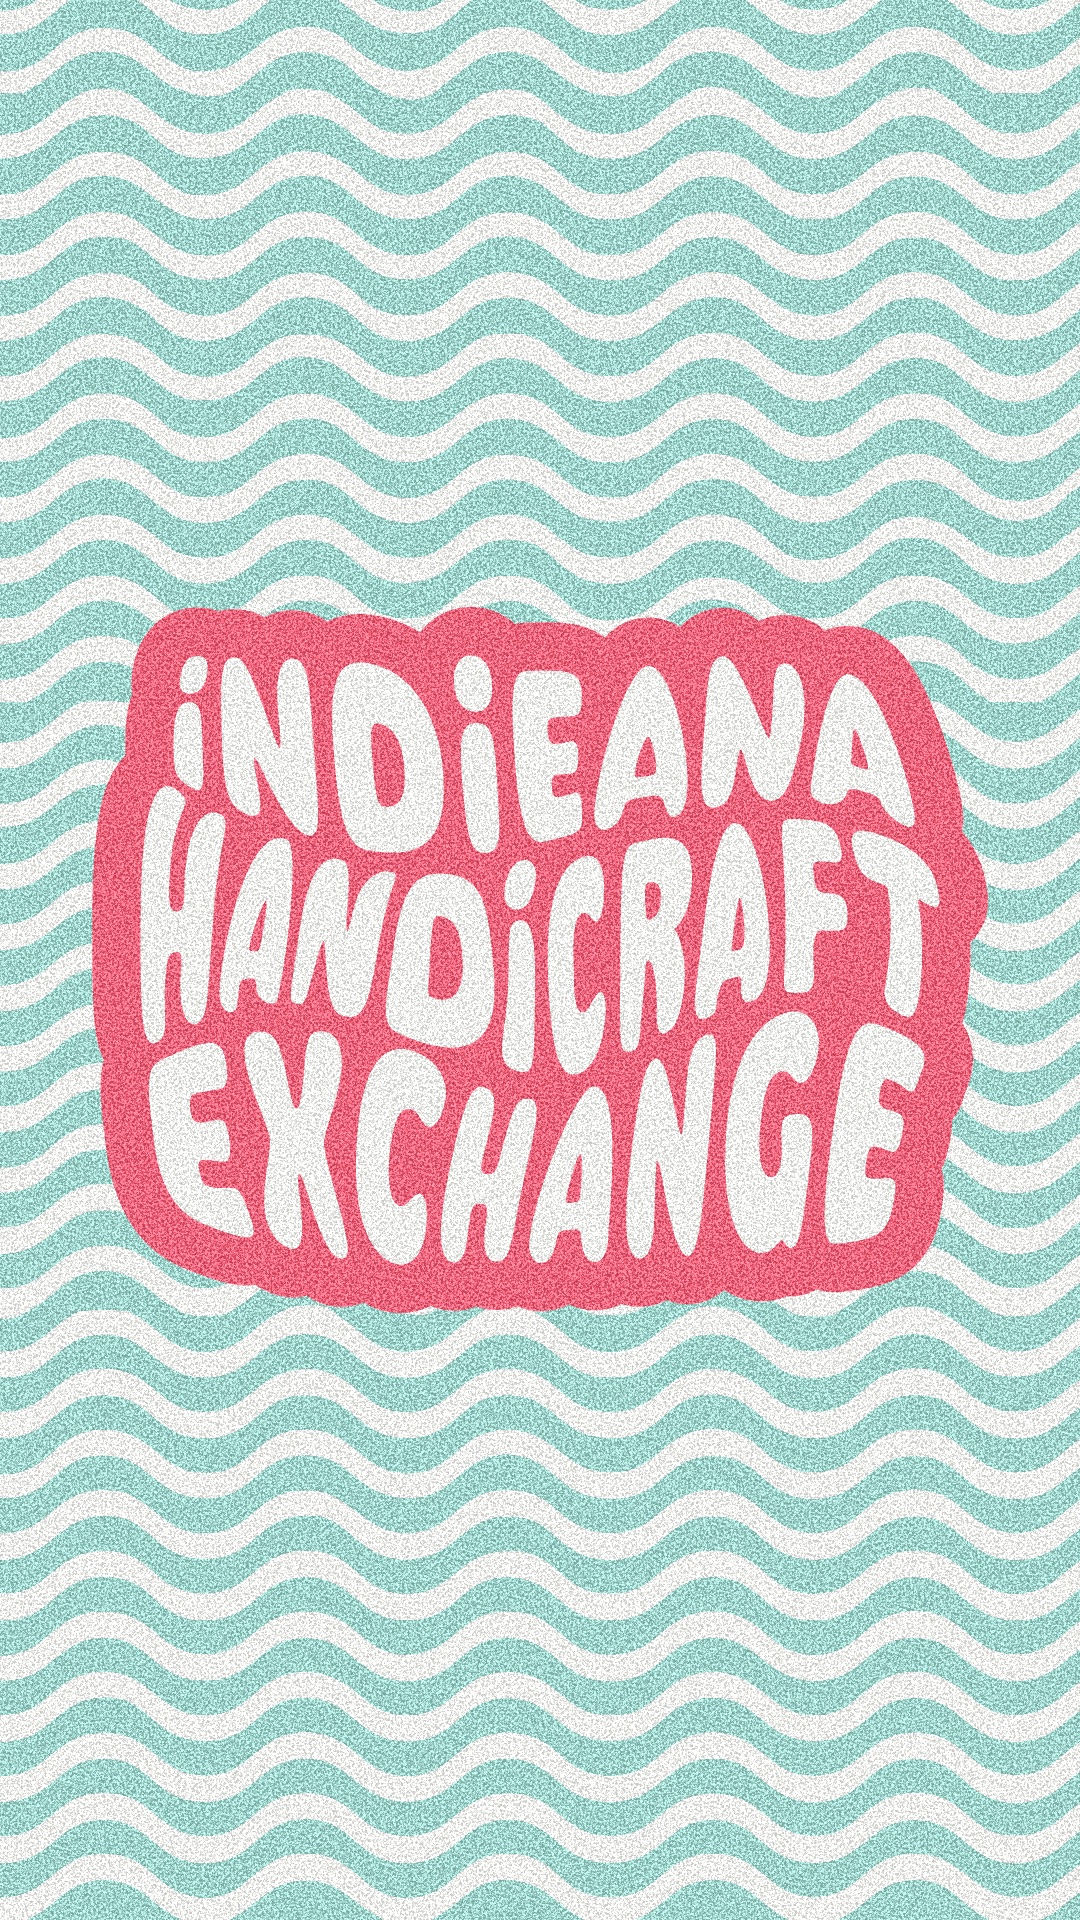 INDIEana Handicraft Exchange